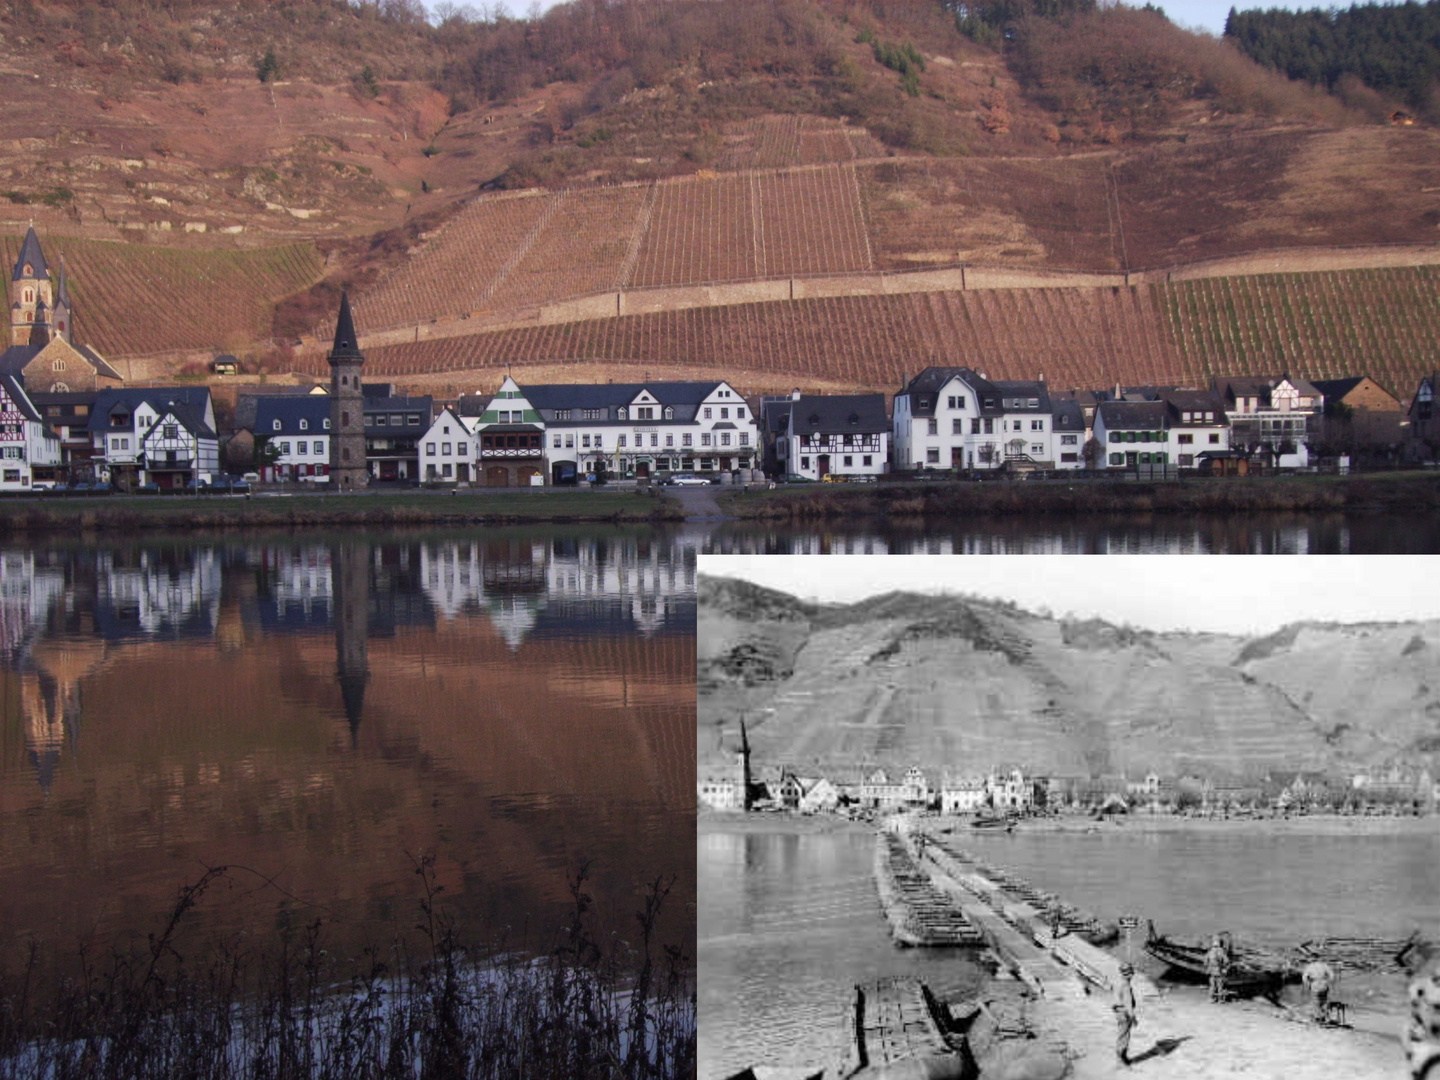 1945 - Sturm über die Mosel bei Hatzenport - Now and then